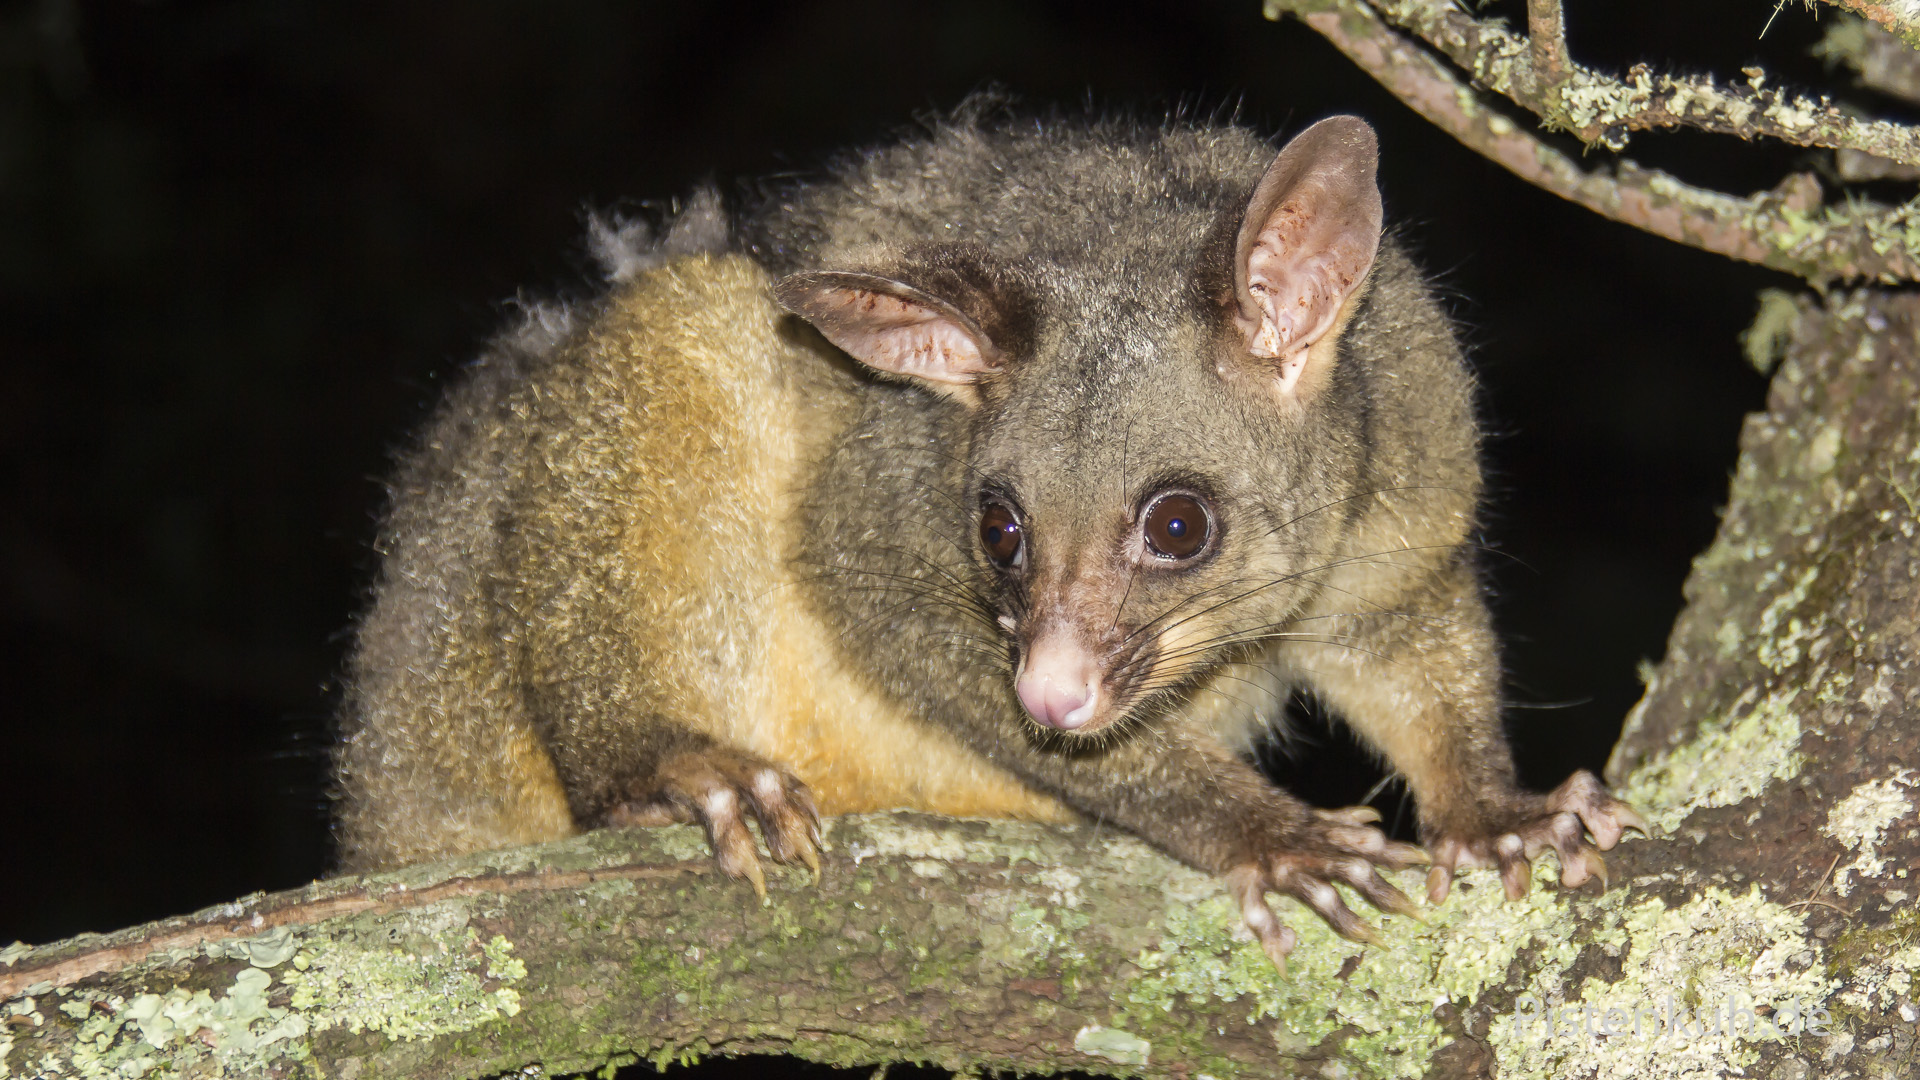 Opossum in den Wäldern Australiens